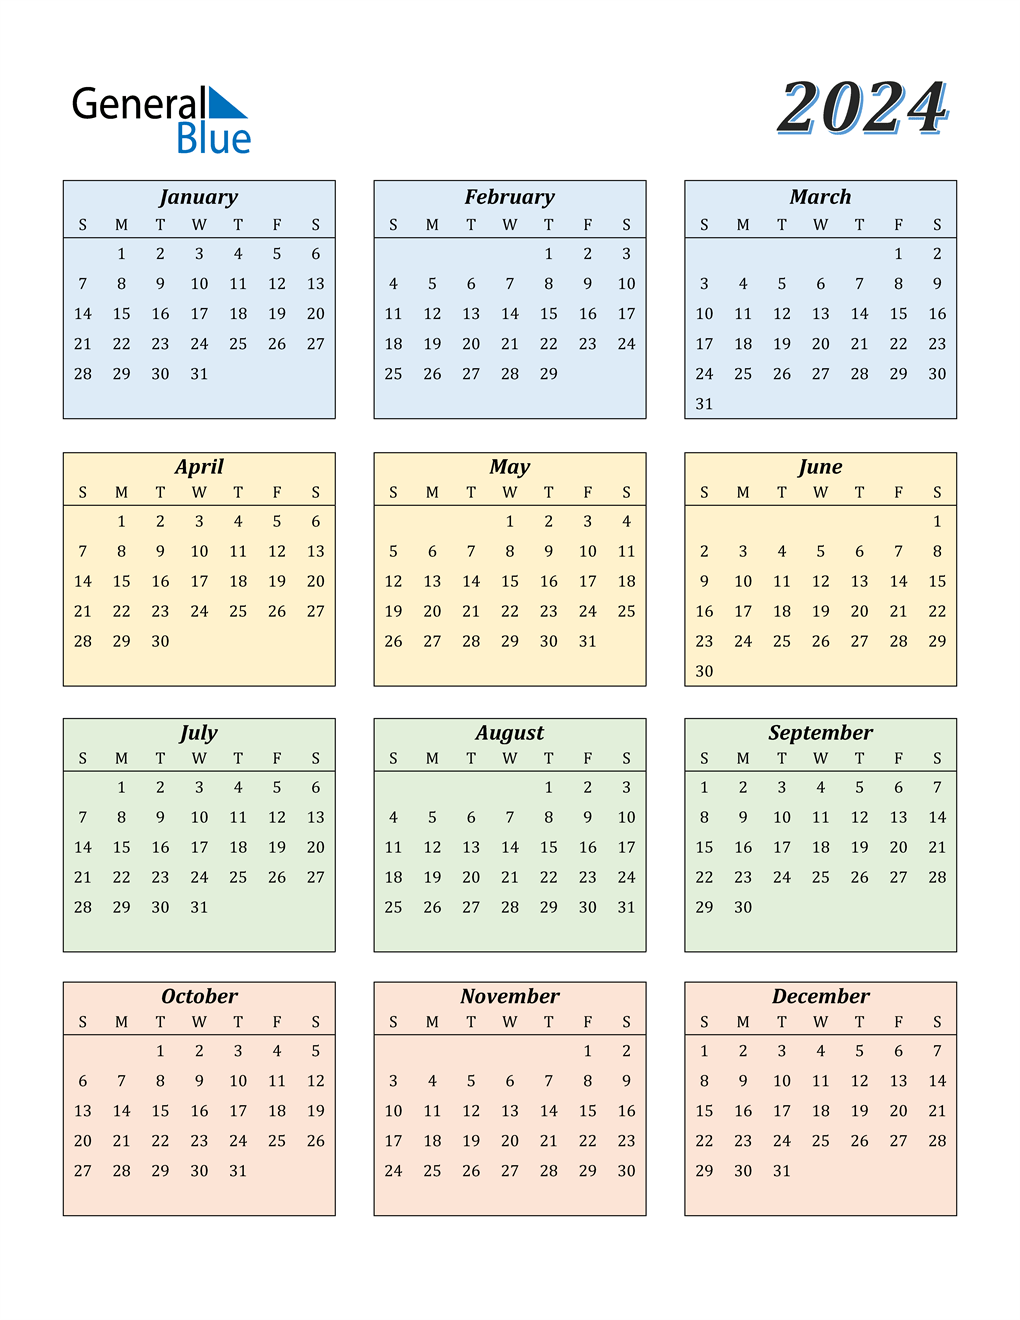 uta-spring-2024-calendar-edyth-ottilie